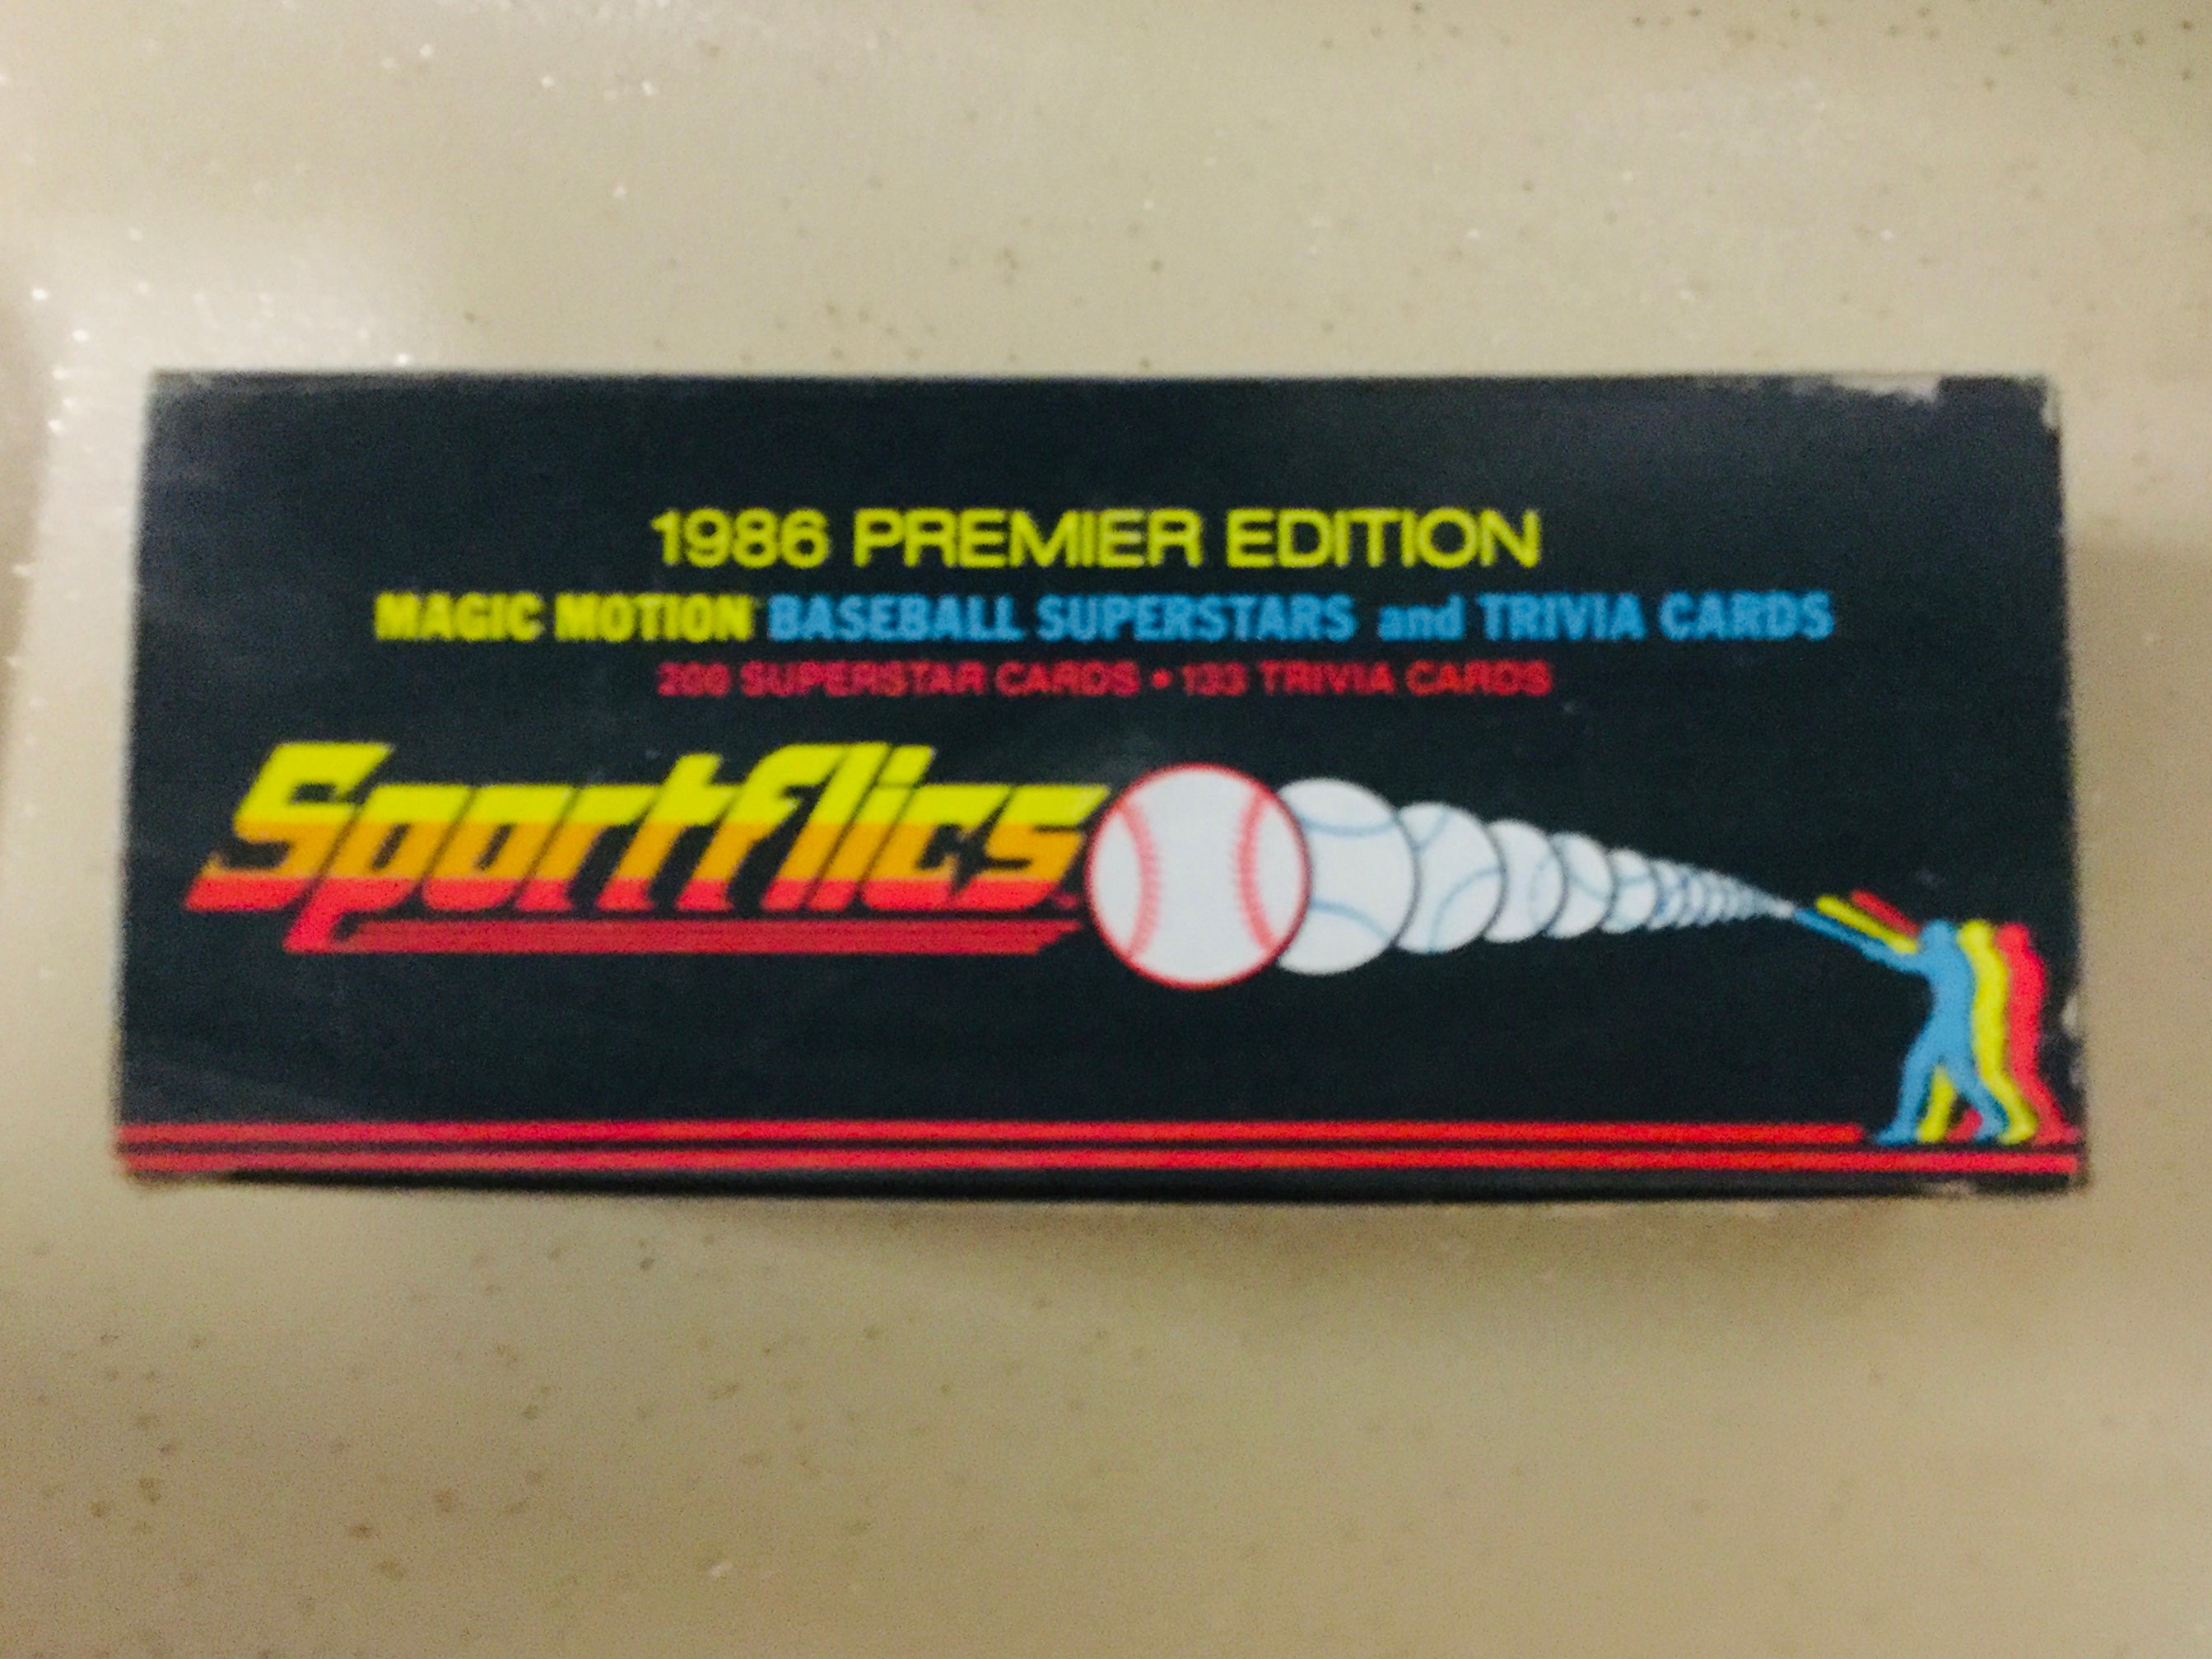 1986 Sportsflics Motion baseball superstars factory cards set